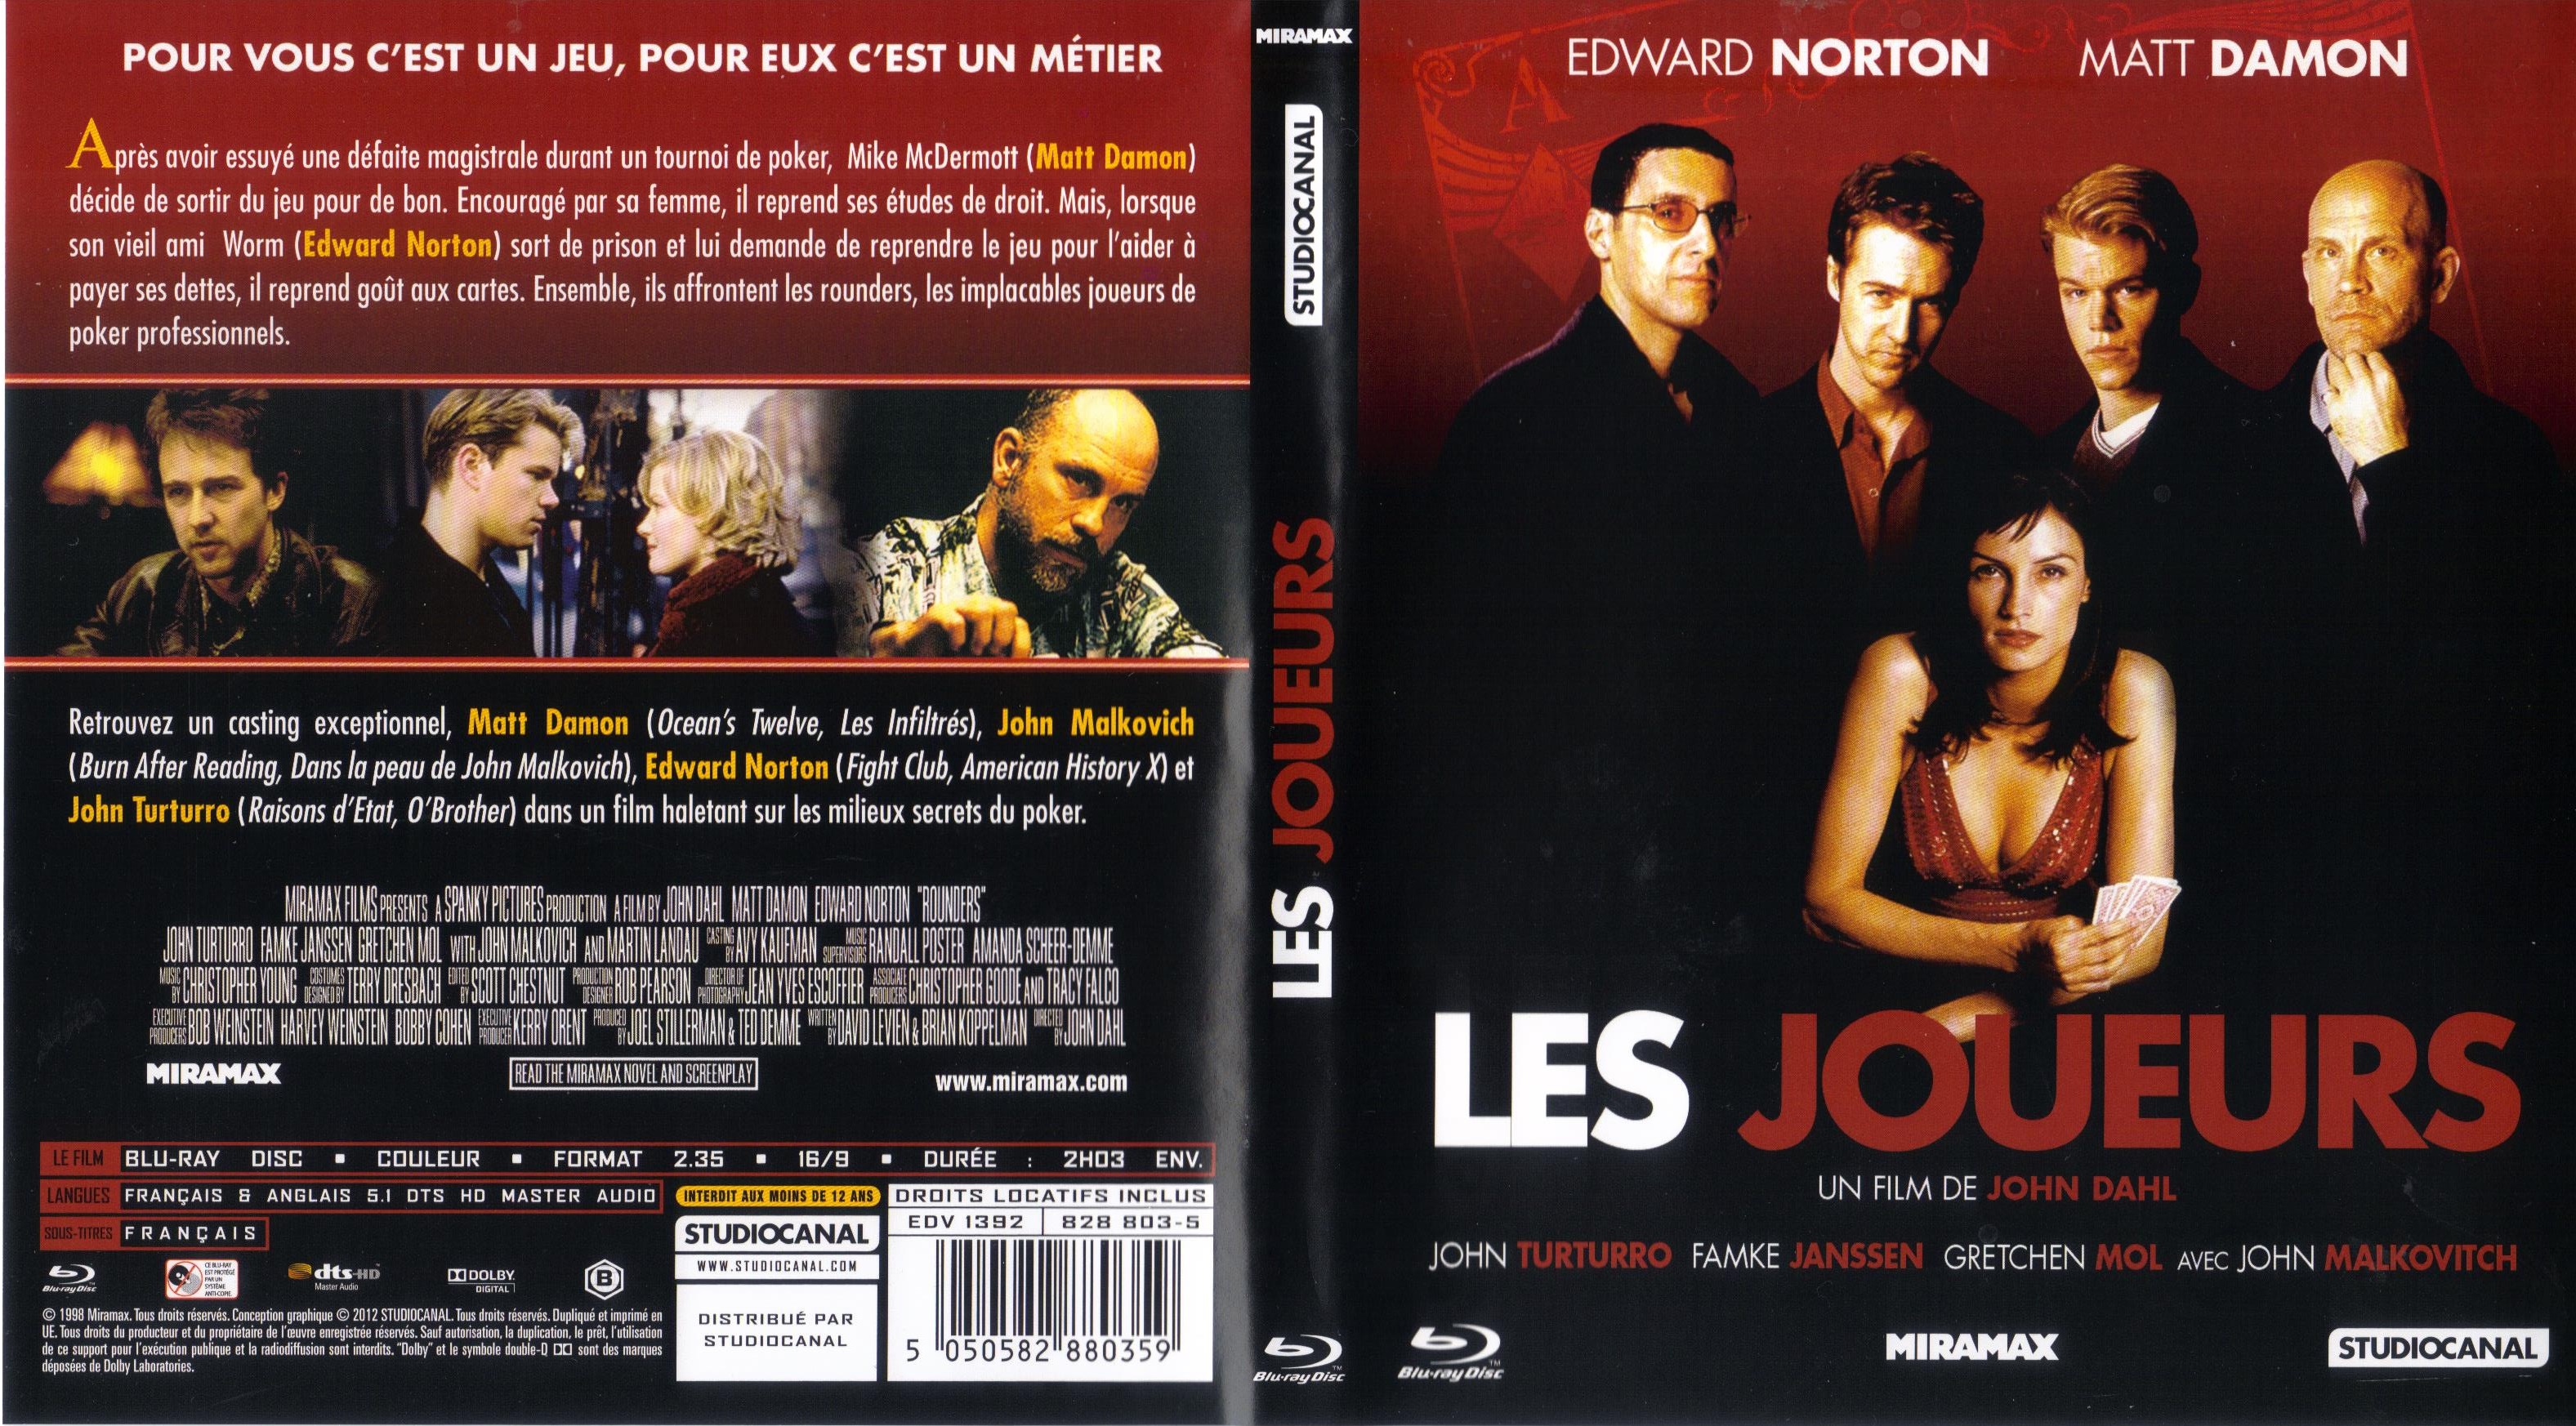 Jaquette DVD Les joueurs (1998) (BLU-RAY)